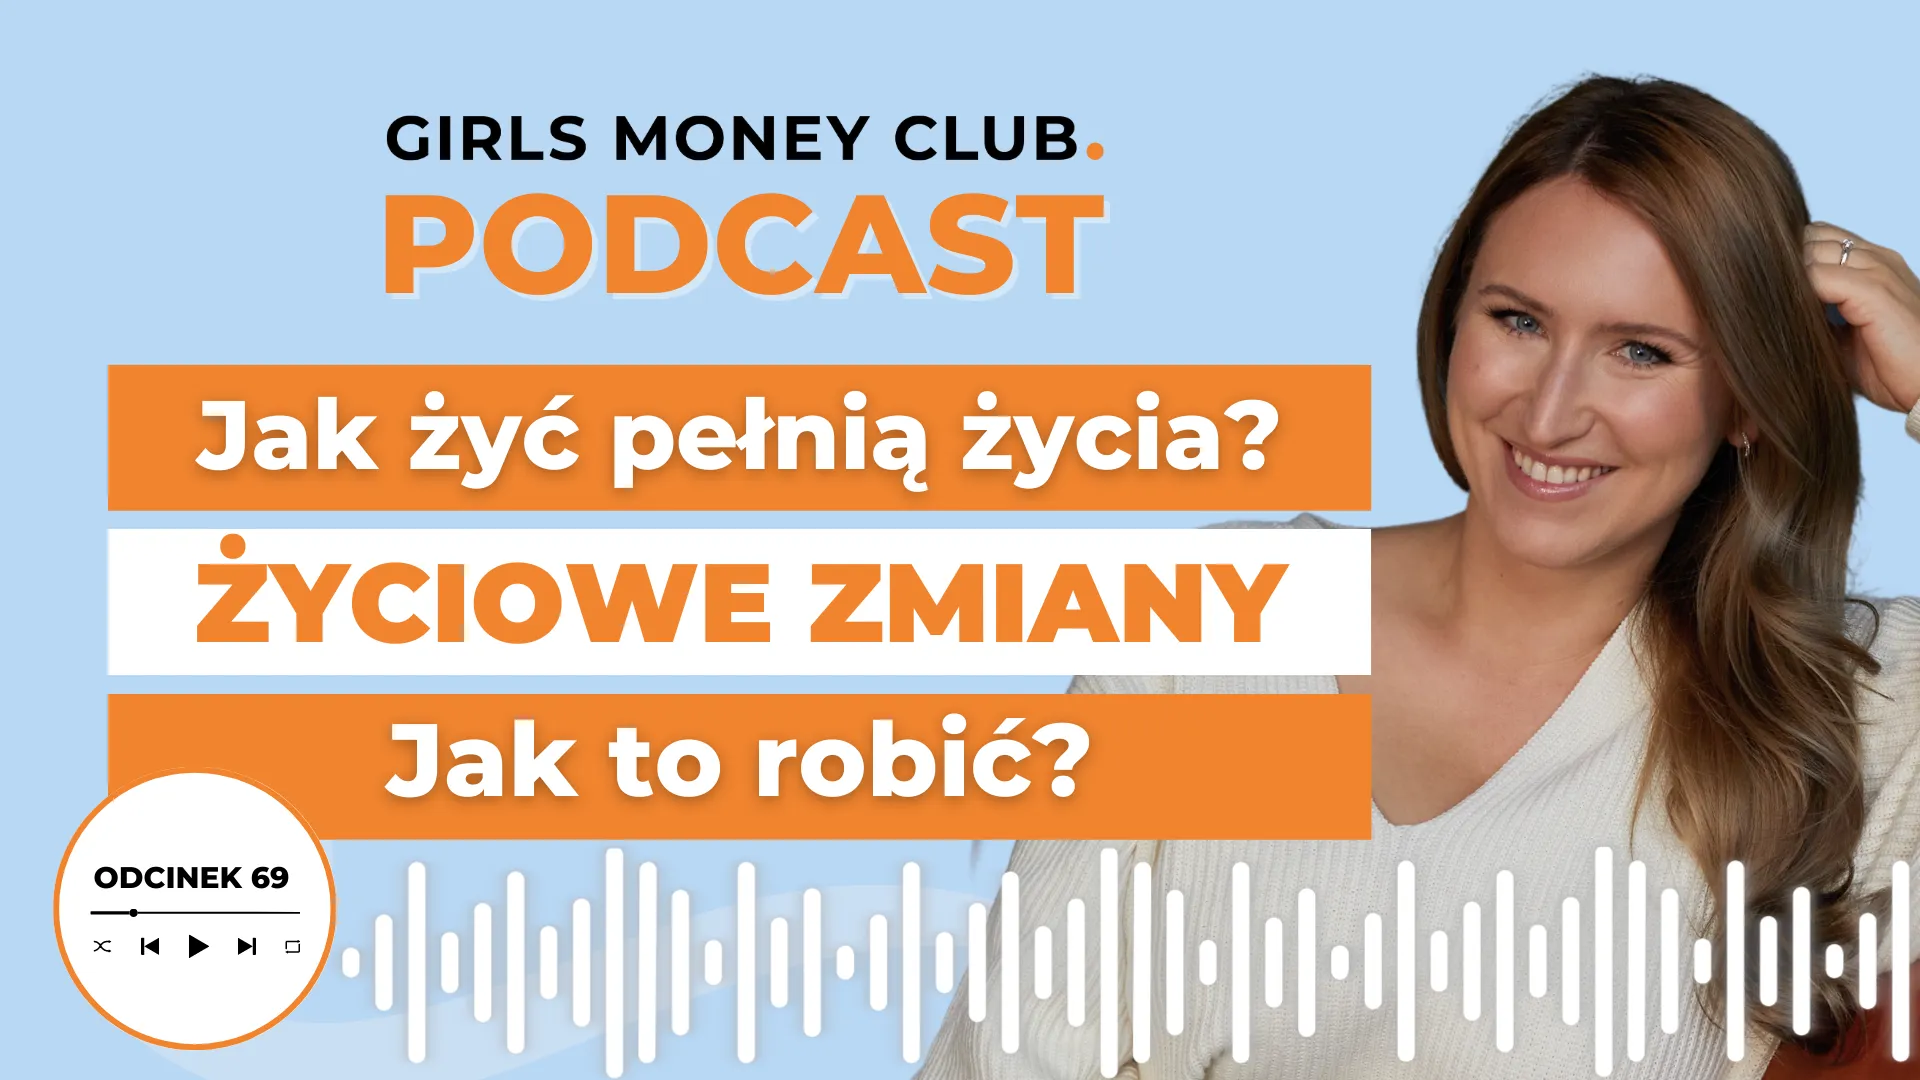 Jak dokonać zmian w życiu | Podcast | Girls Money Club